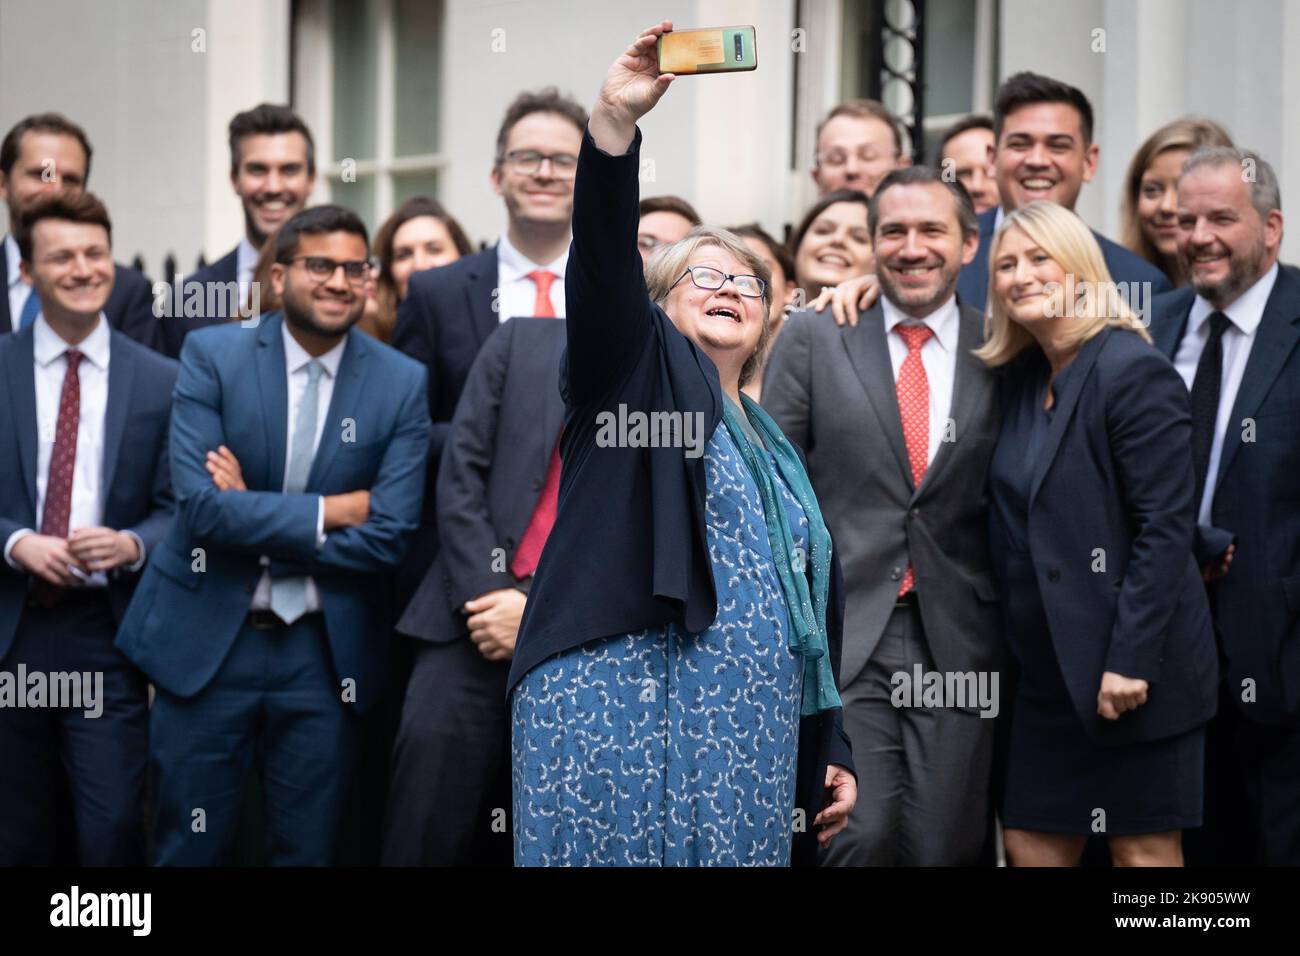 Segretario di Stato per il lavoro e le pensioni, Therese Coffey prende un selfie prima che il primo ministro uscente Liz Truss faccia un discorso fuori 10 Downing Street. Data immagine: Martedì 25 ottobre 2022. Foto Stock